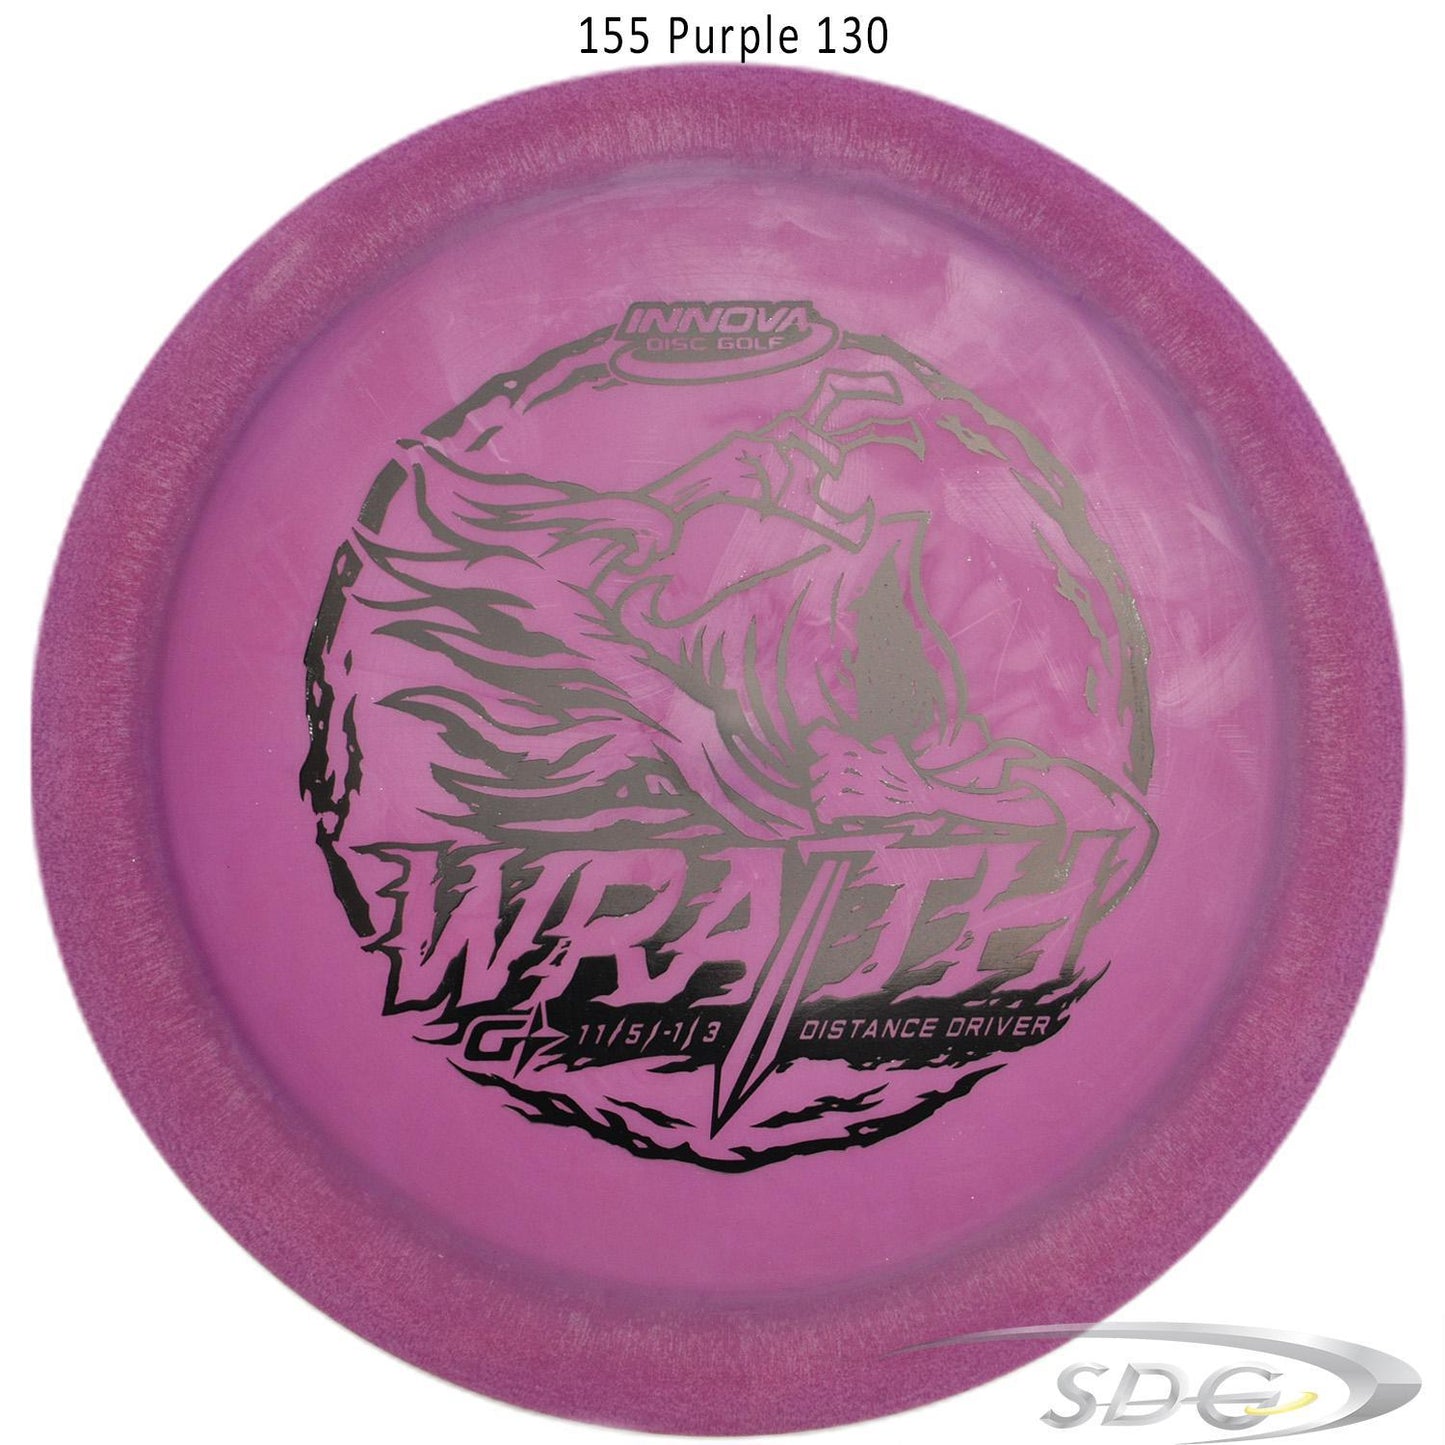 innova-gstar-wraith-disc-golf-distance-driver 155 Purple 130 